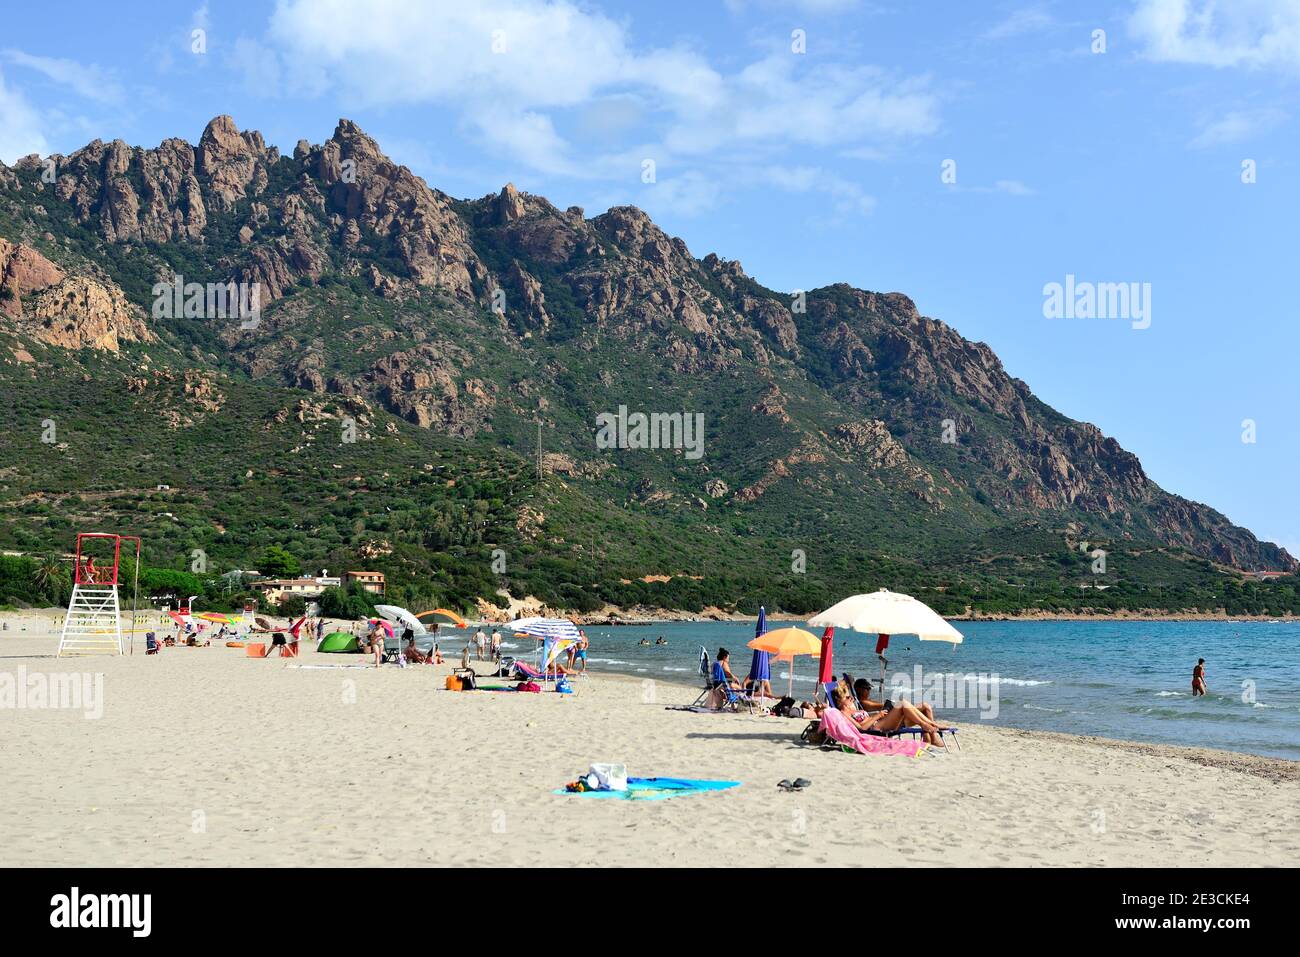 Italia, Sardegna, Tertenia: Turisti sulla spiaggia del porto turistico Foto Stock